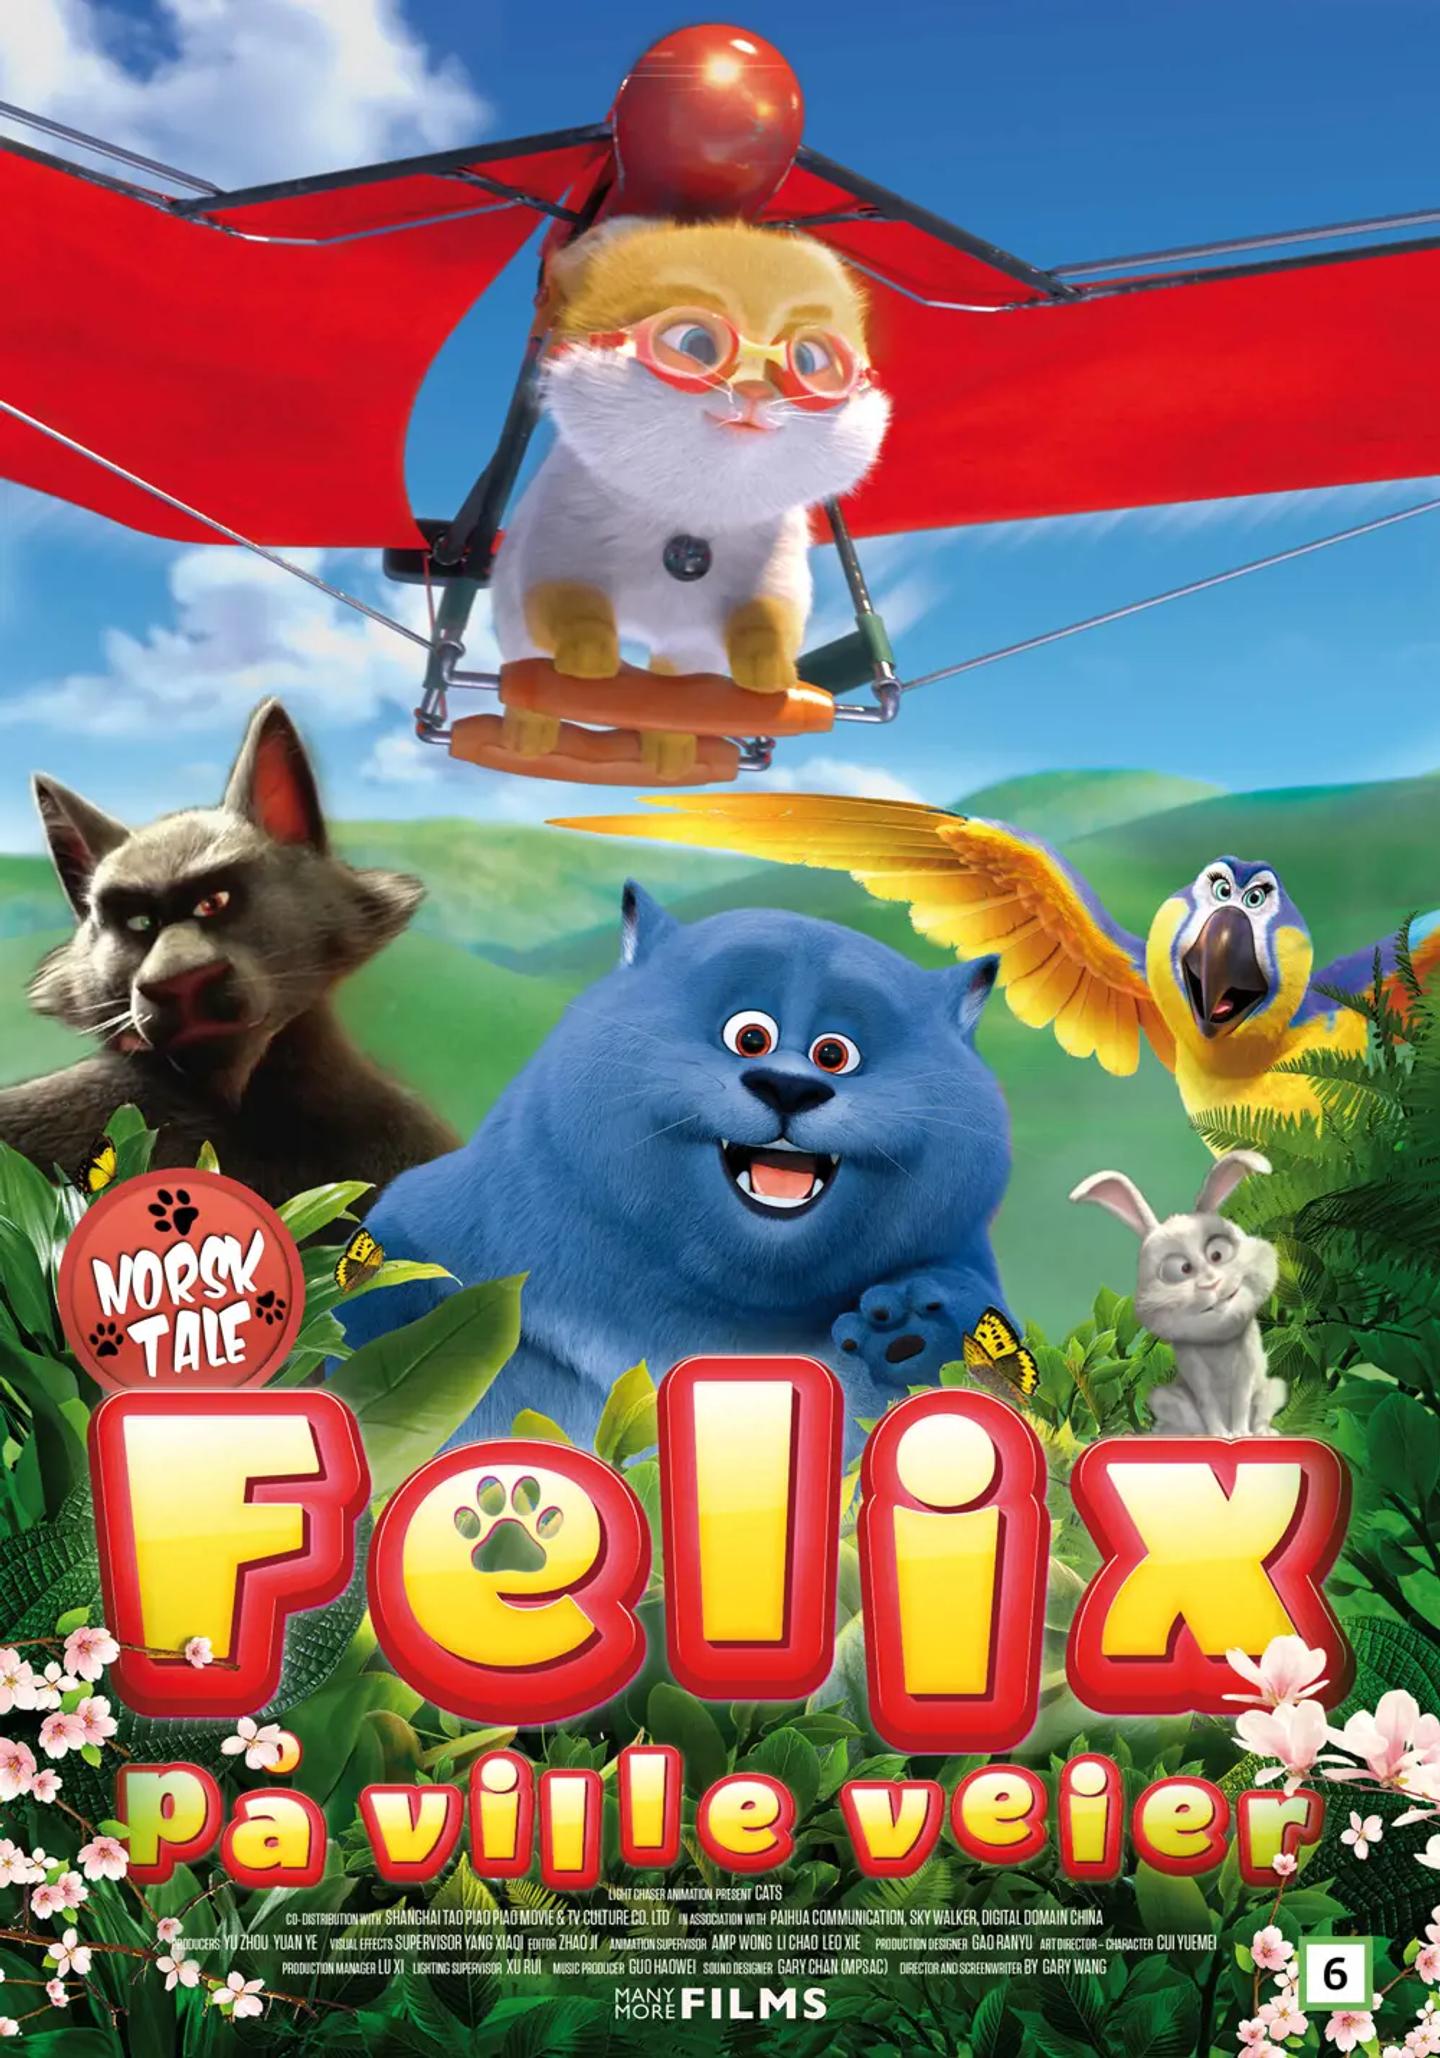 Plakat for 'Felix på ville veier'